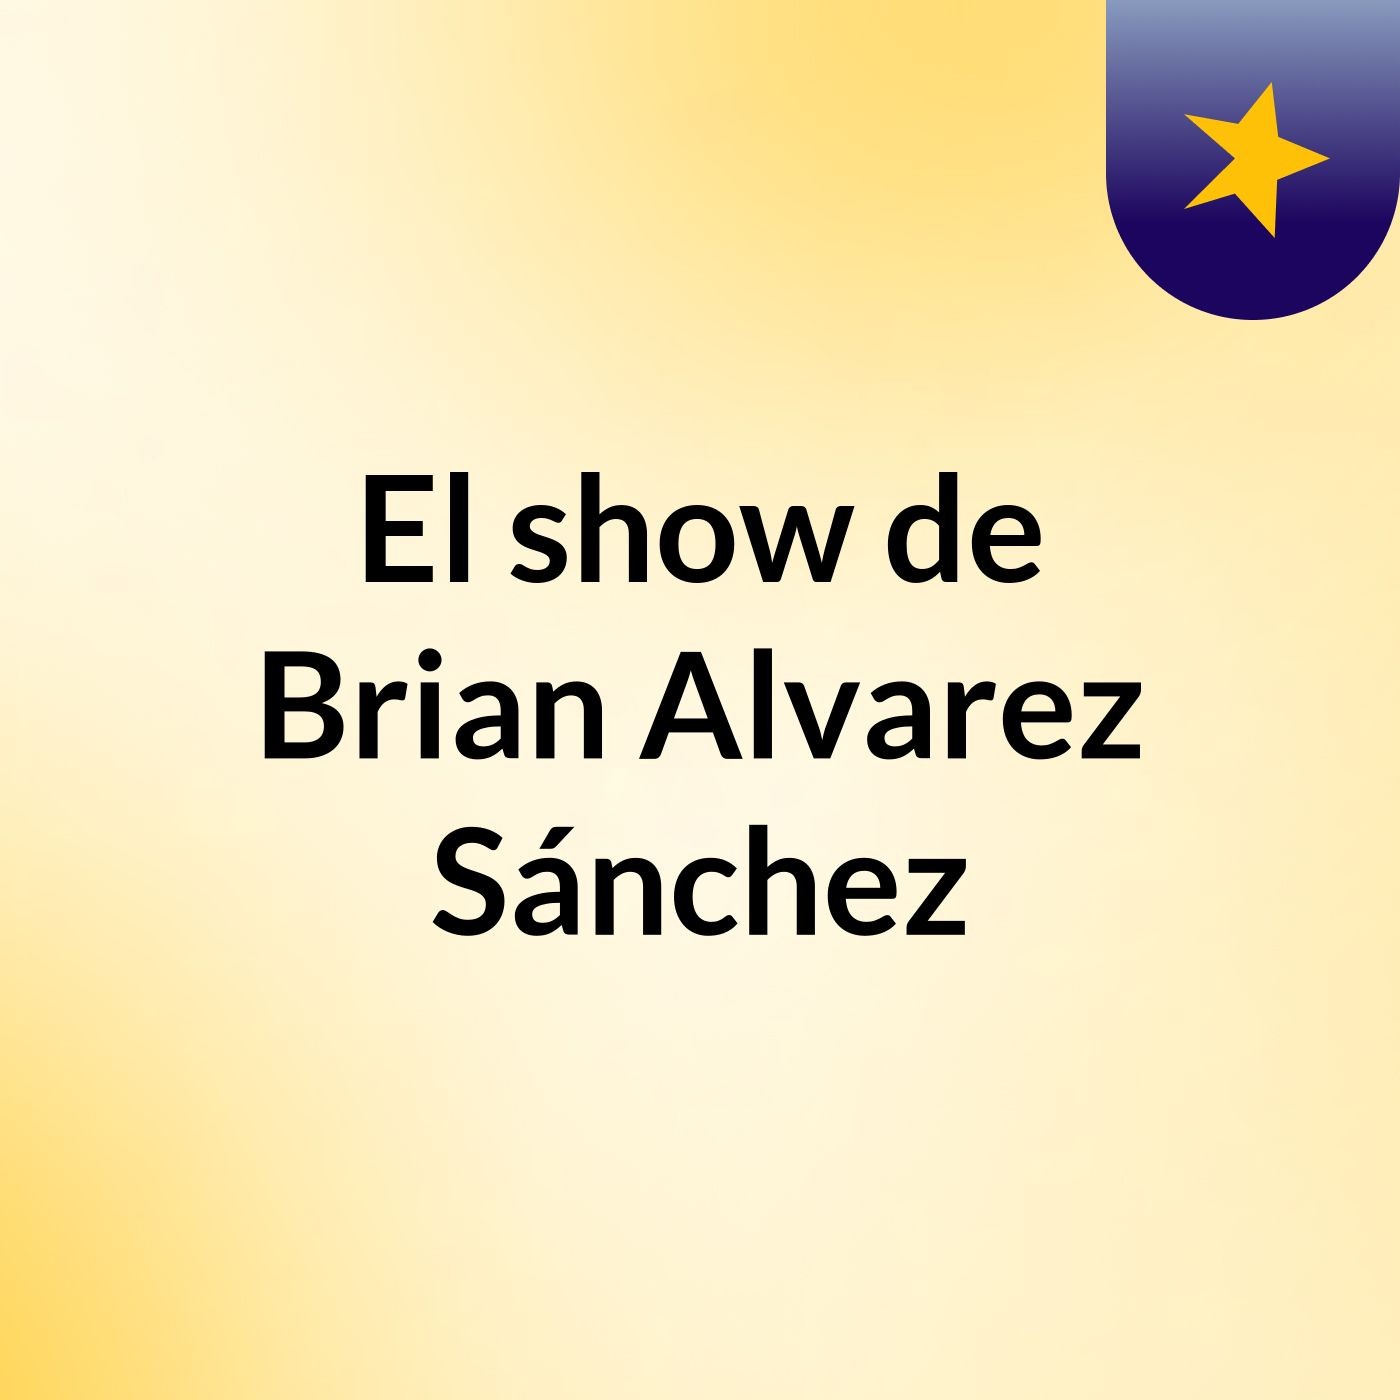 El show de Brian Alvarez Sánchez